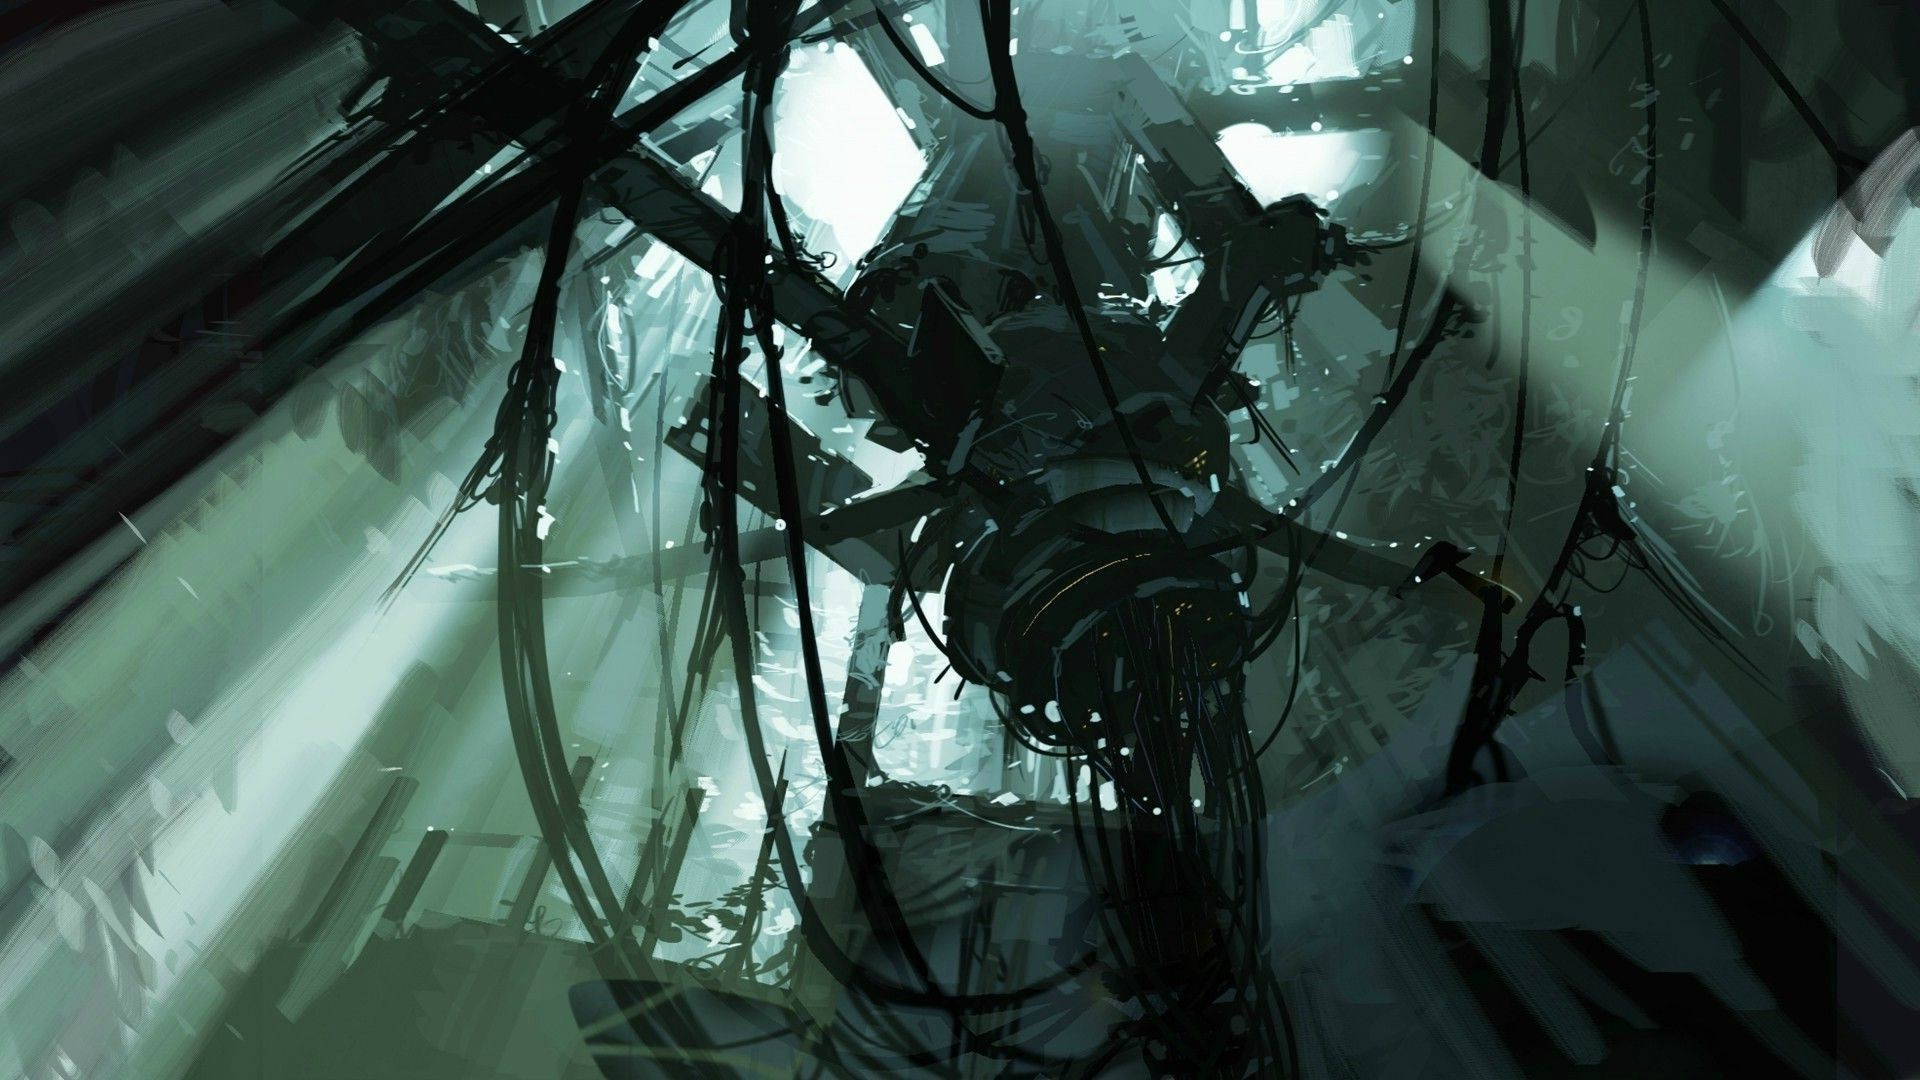 Portal 2, Aperture Laboratories, Concept Art, Video Games, Ruin, Futuristic, Science Fiction, Machine Wallpaper